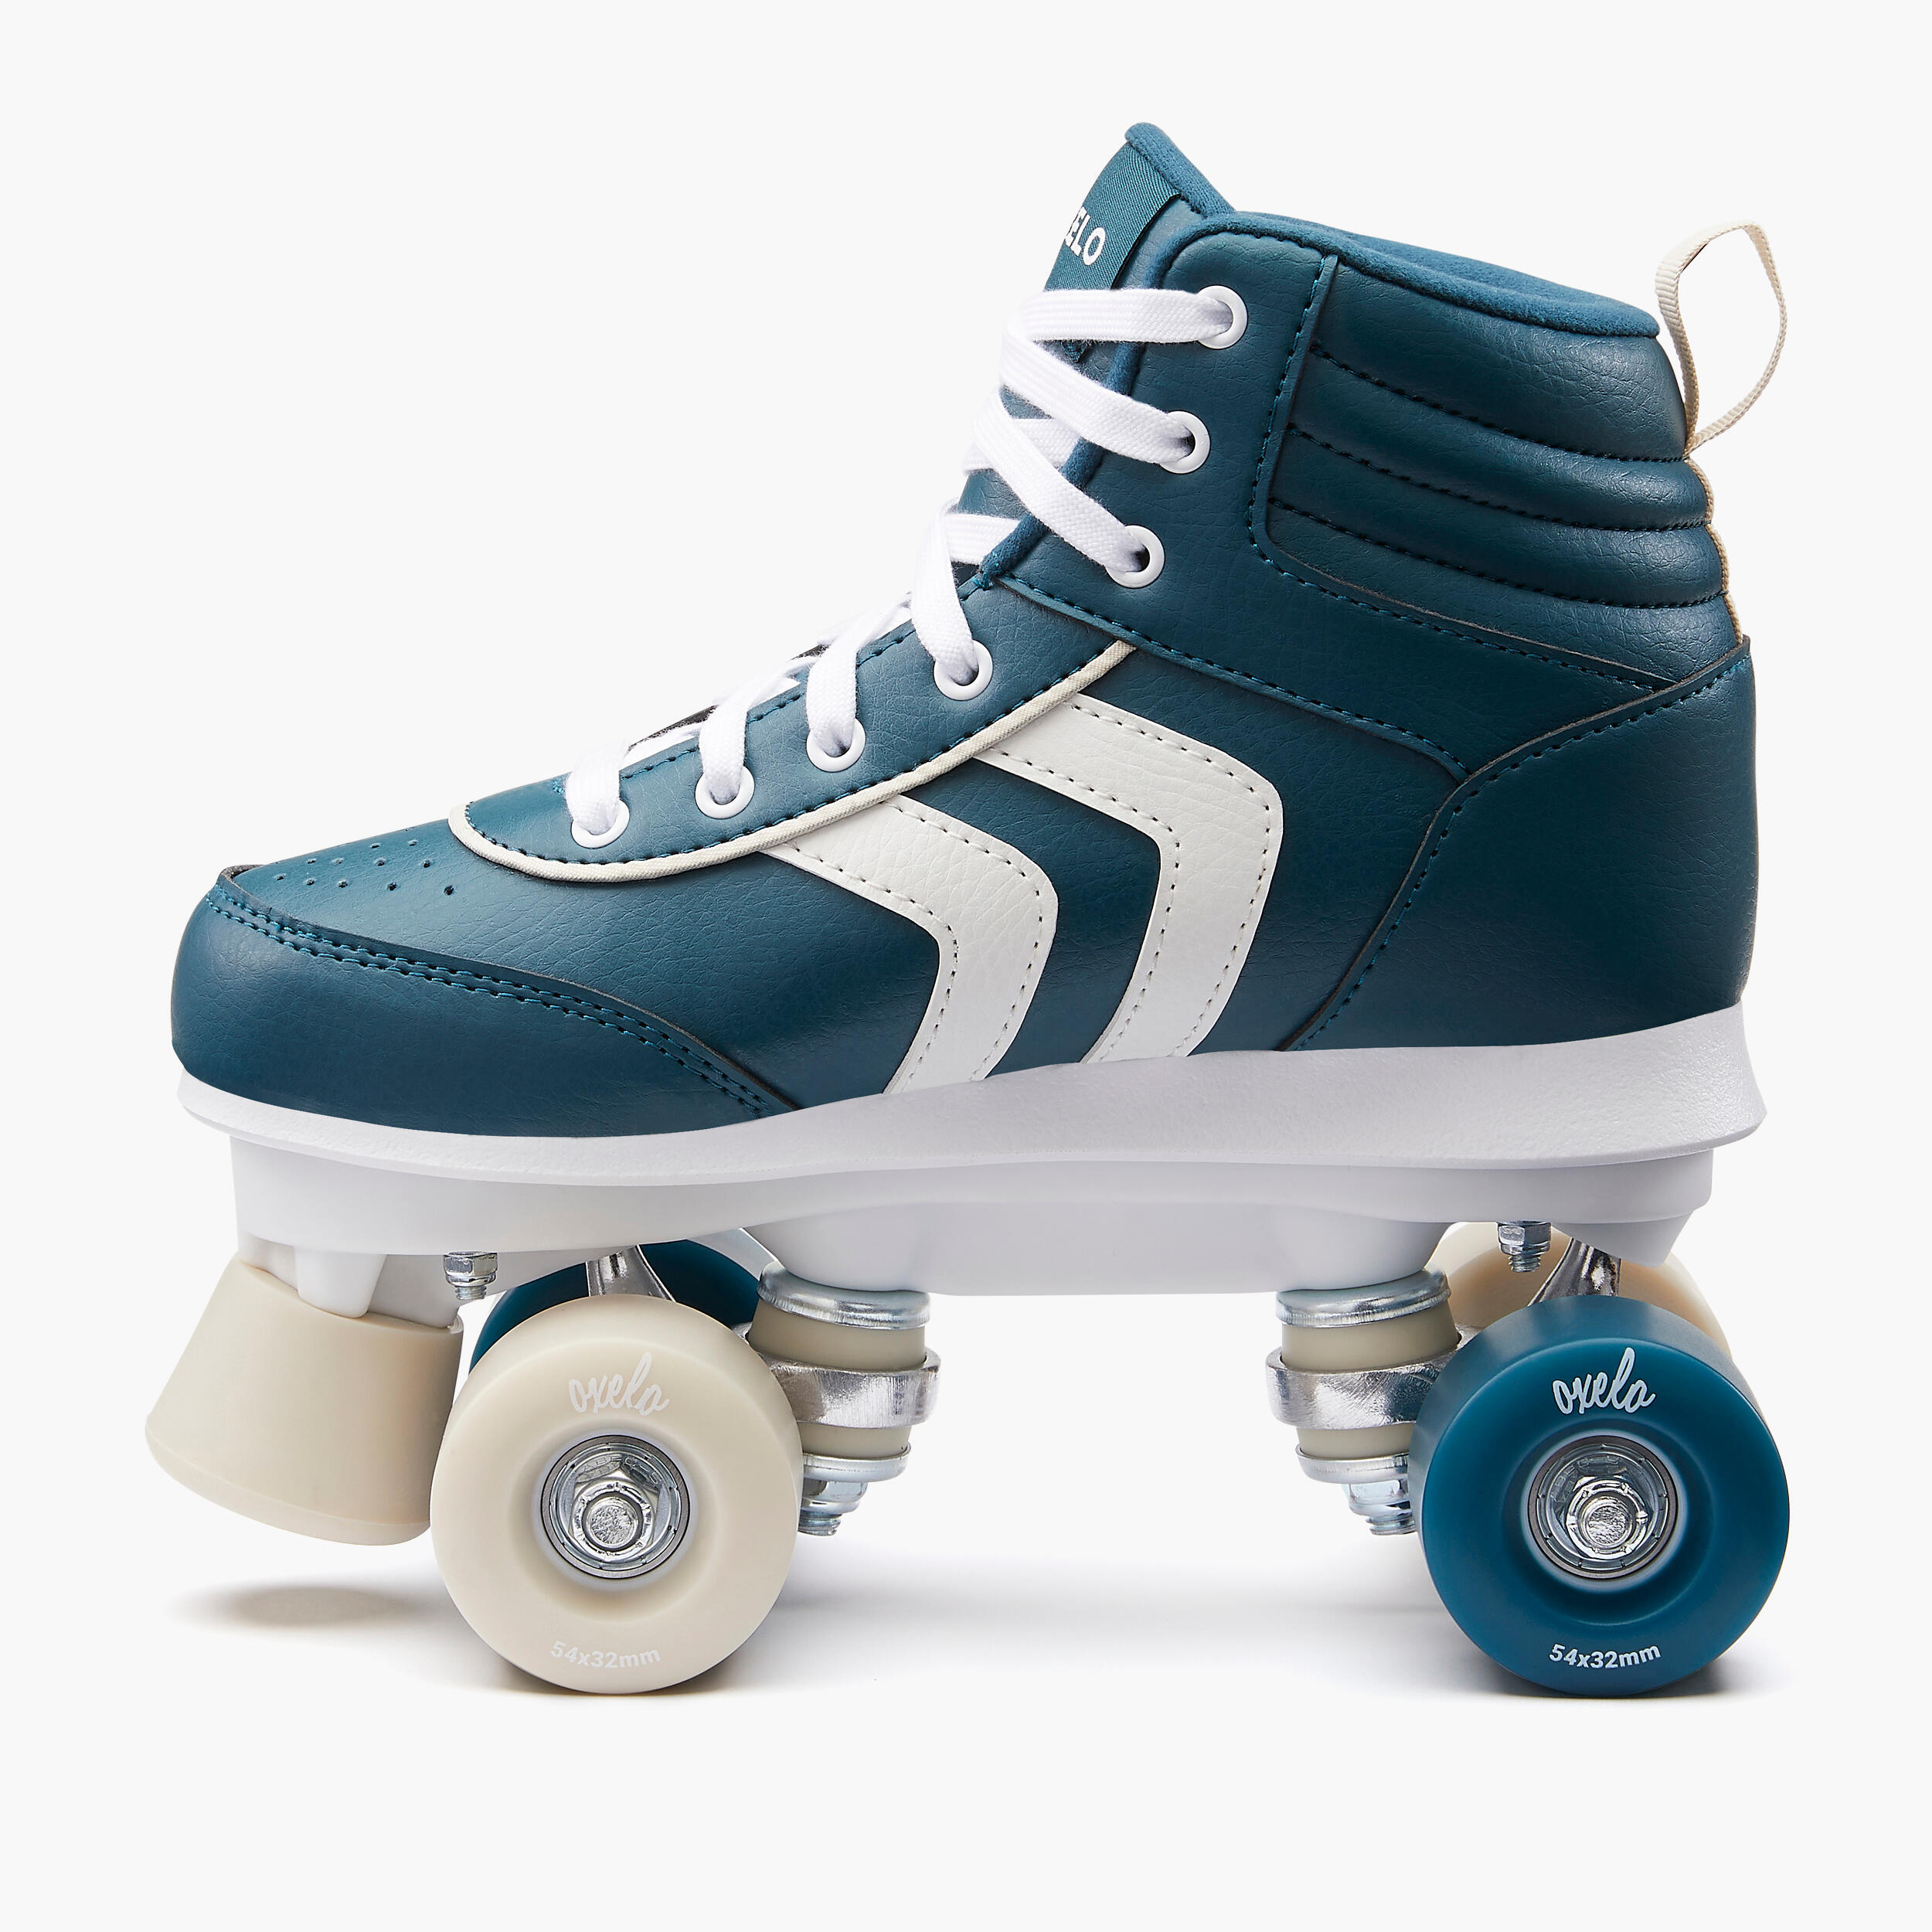 Kids' Roller Skates Quad 100 - Navy Blue 5/11